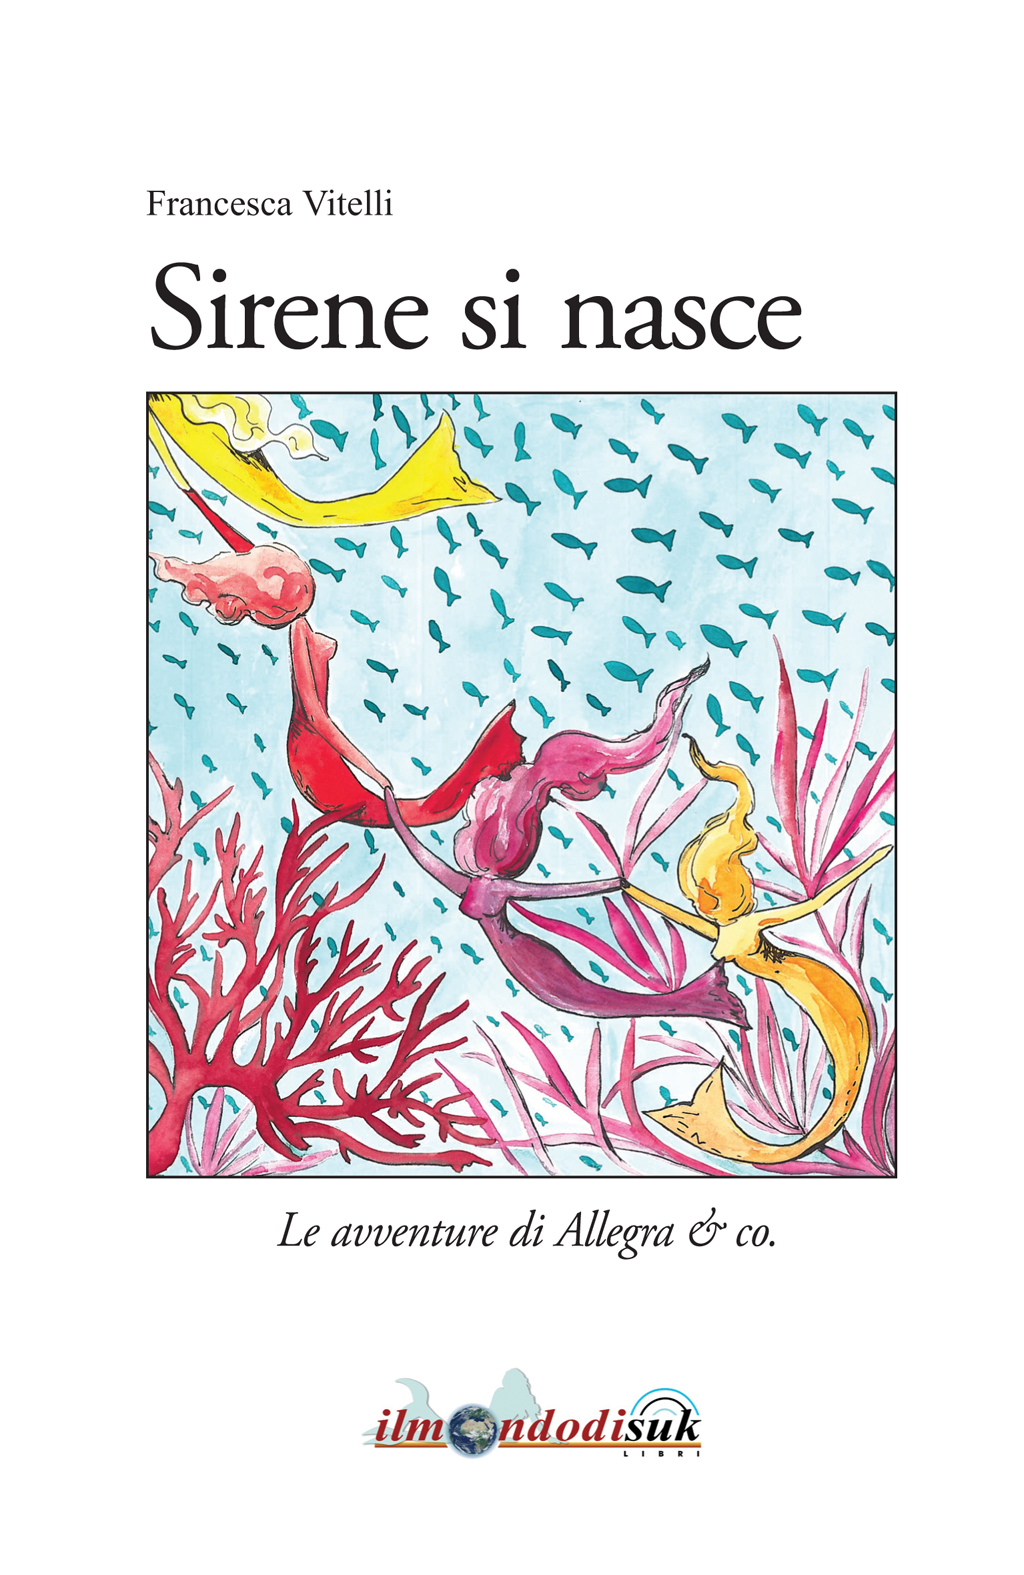 Ilmondodisuk al Salone del libro con “Sirene si nasce” di Francesca Vitelli